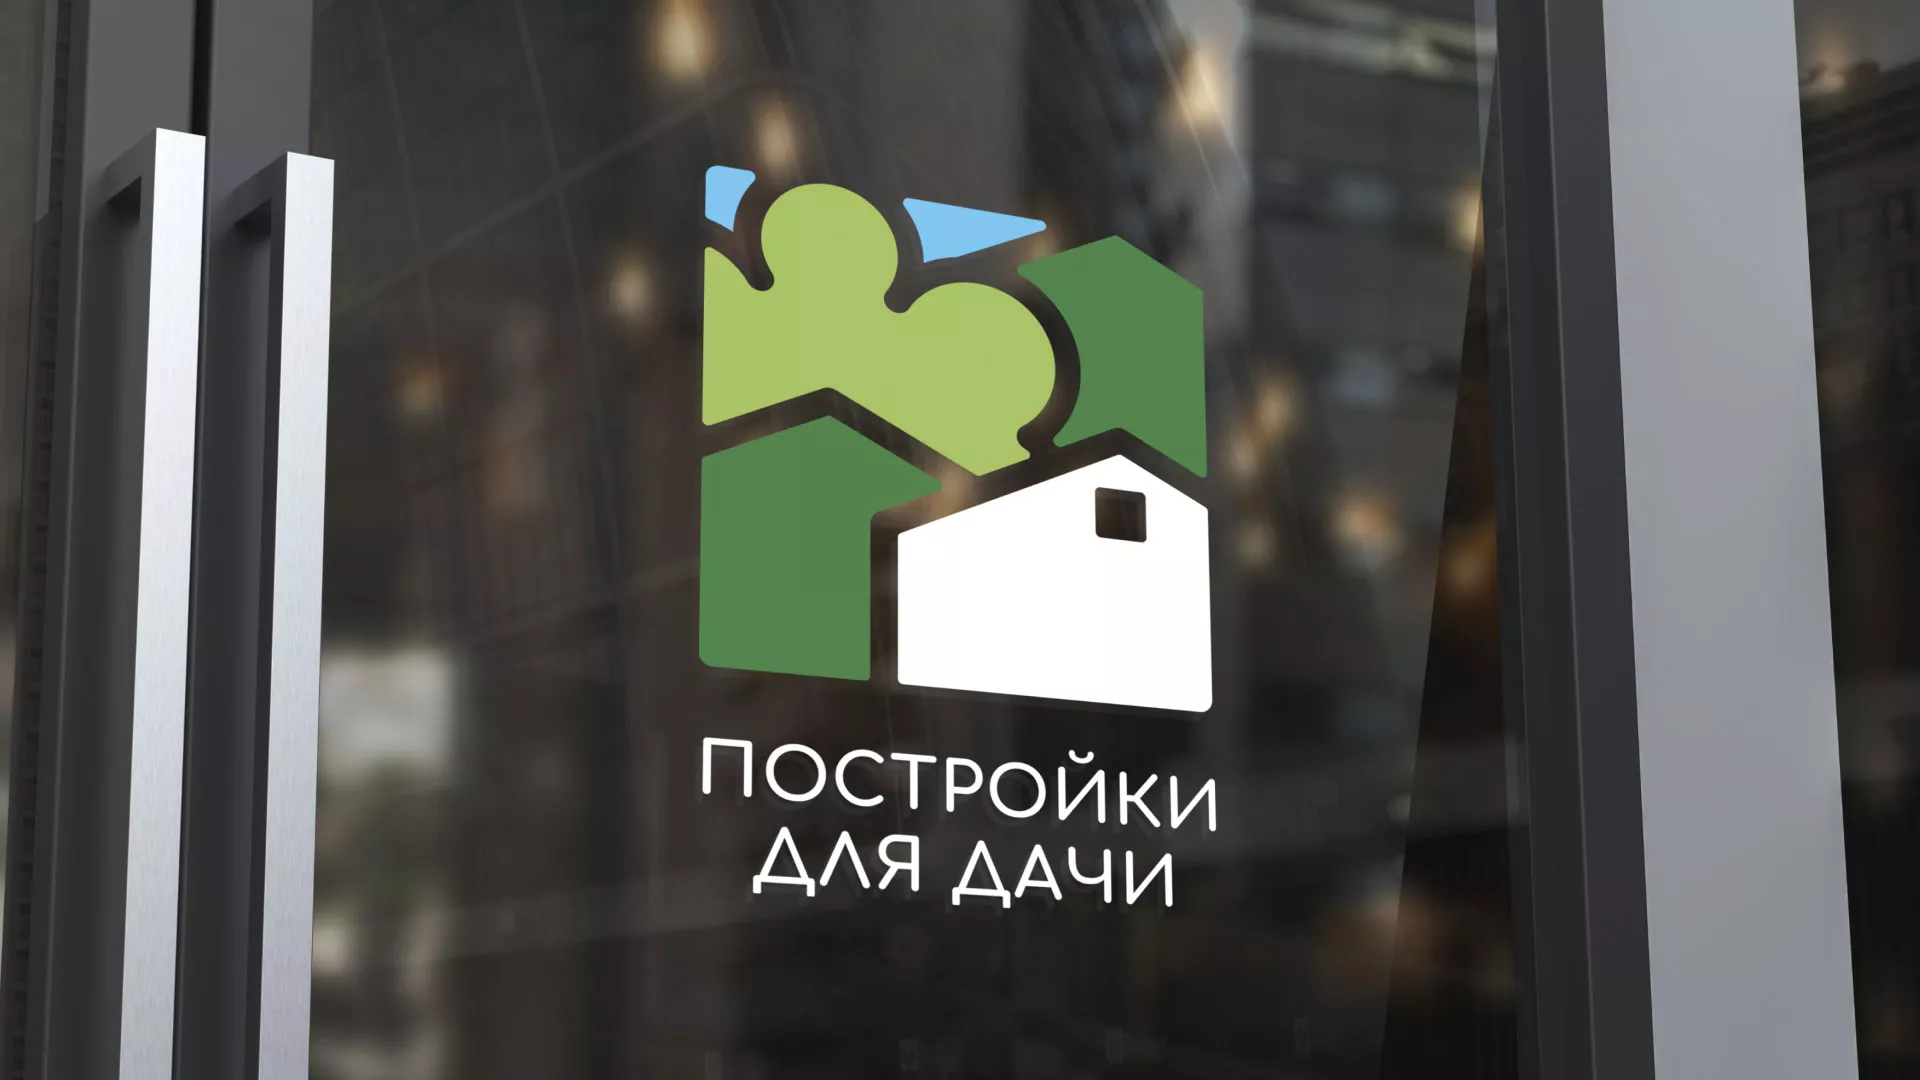 Разработка логотипа в Гаджиево для компании «Постройки для дачи»